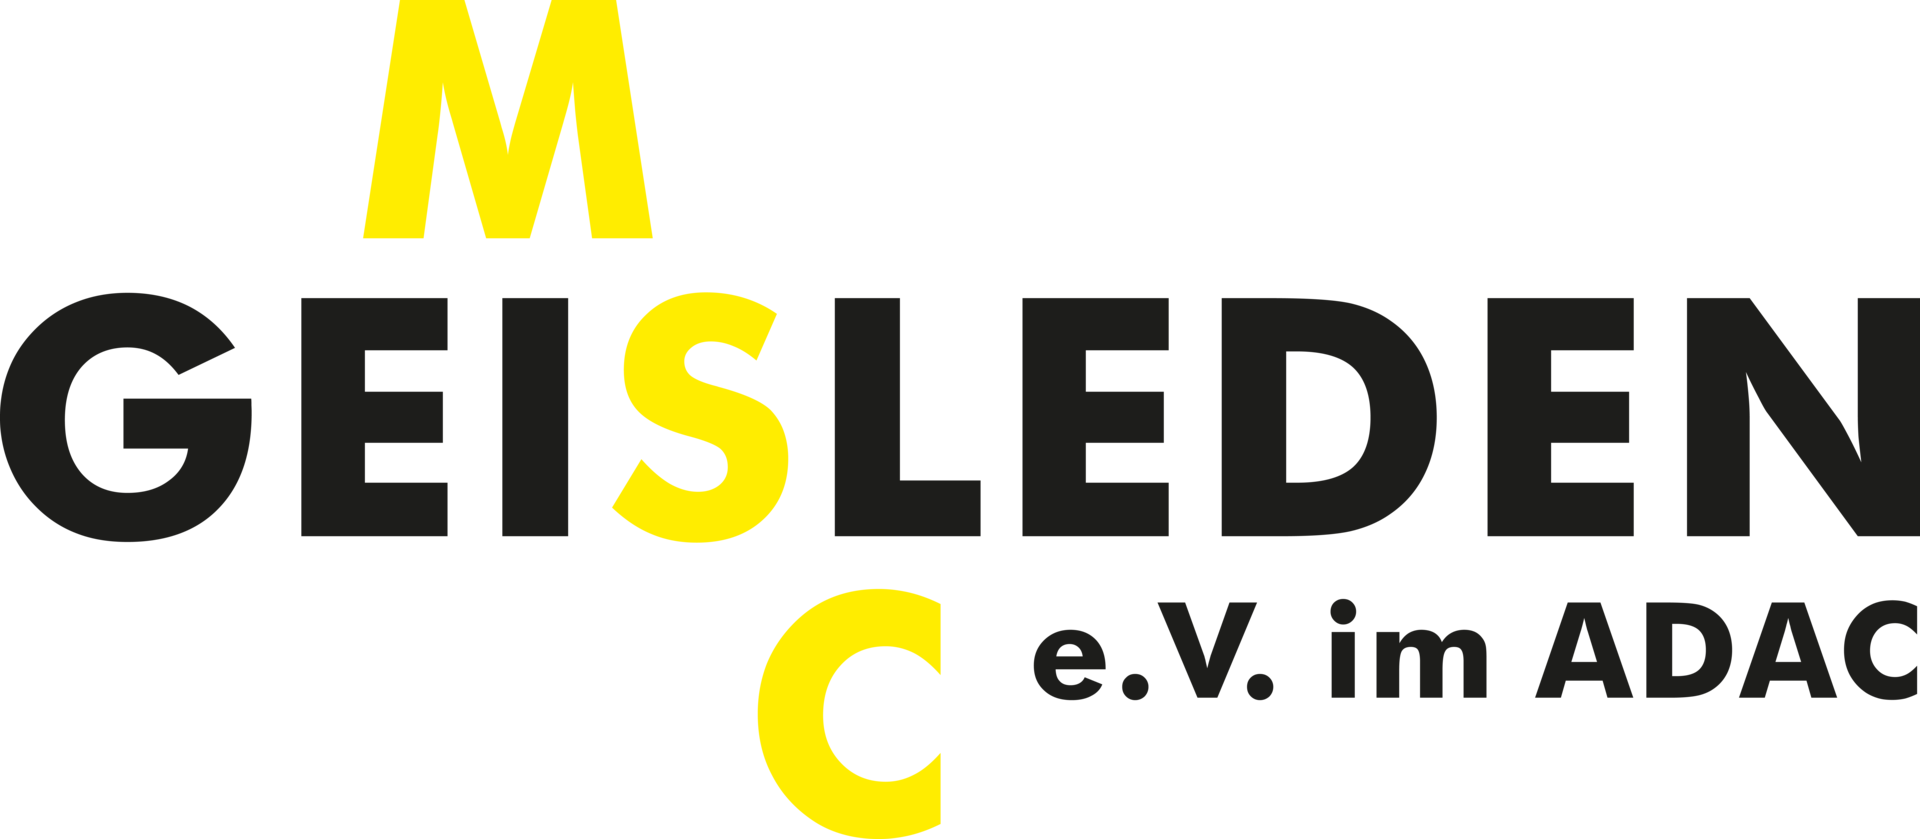 Logo MSC Geisleden